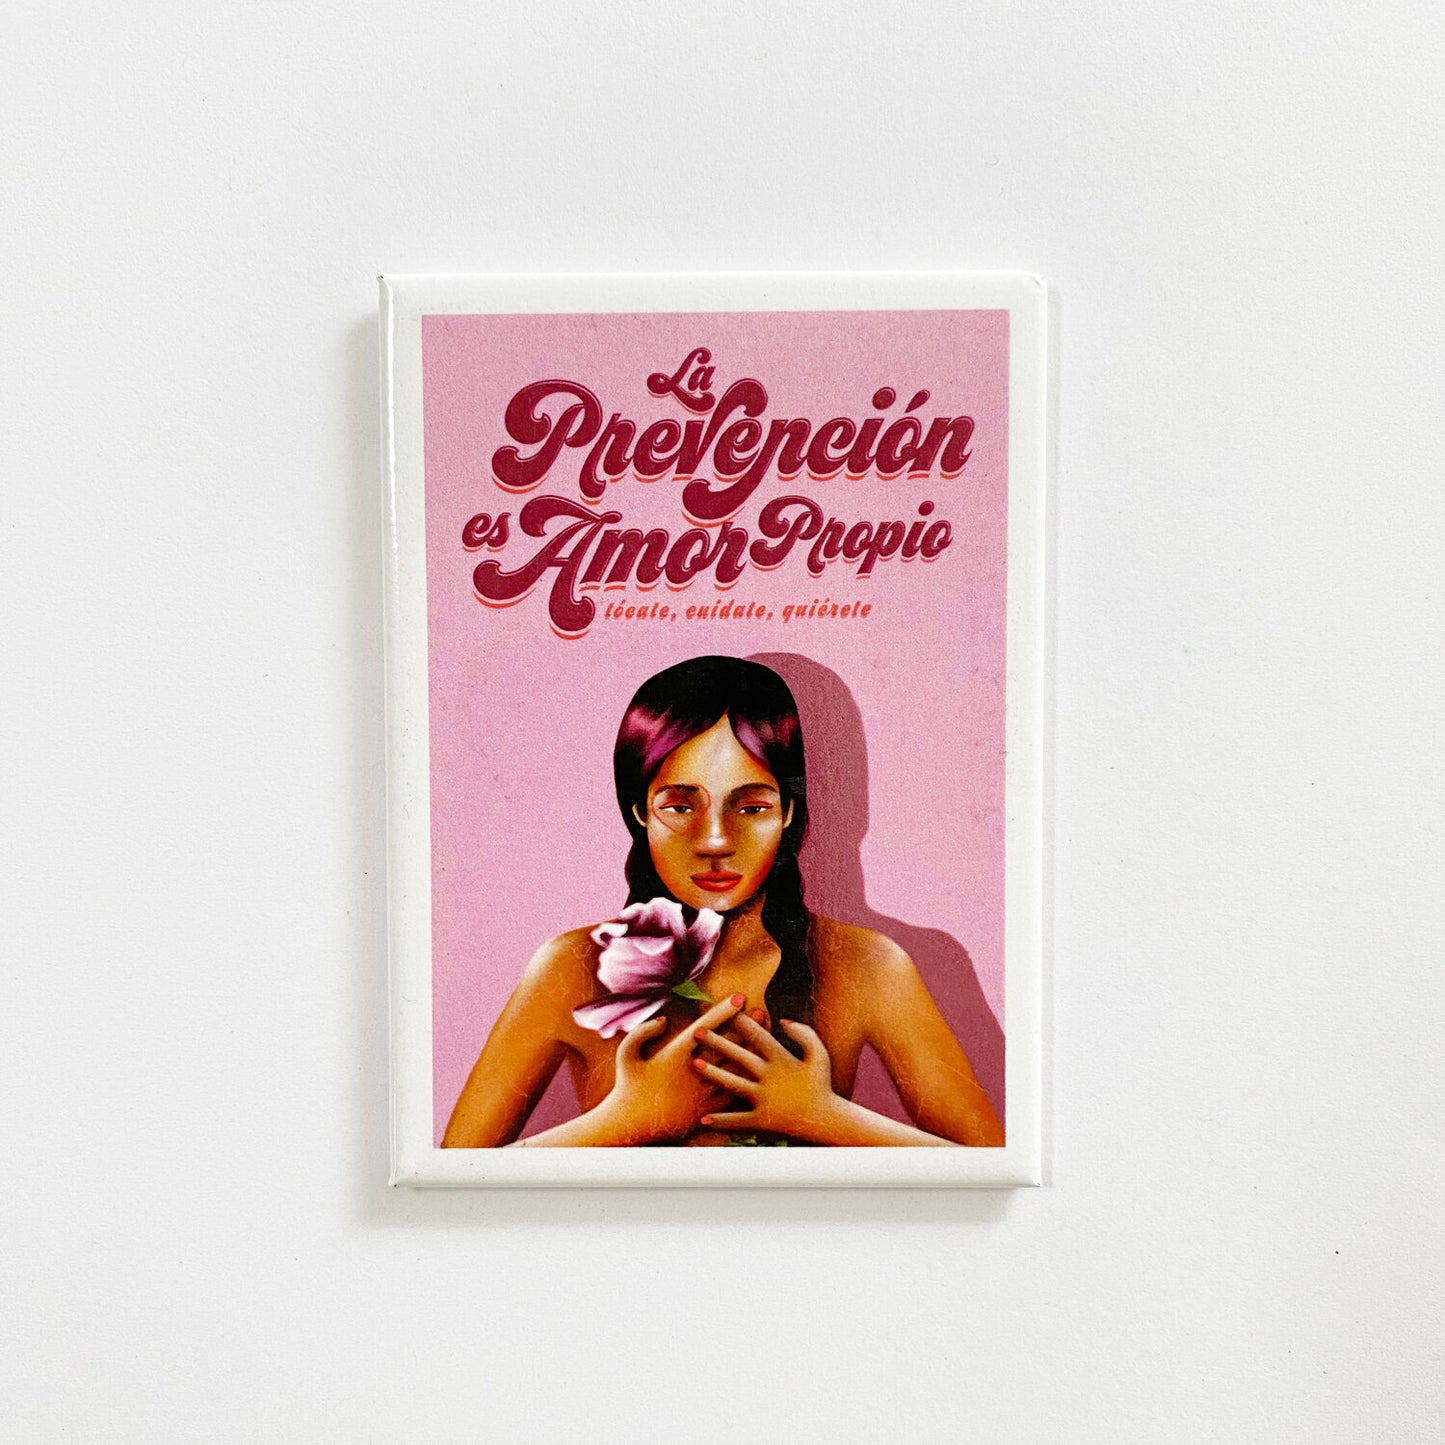 Magnet: "La Preventión es Amor Propio" by Cristina Maya